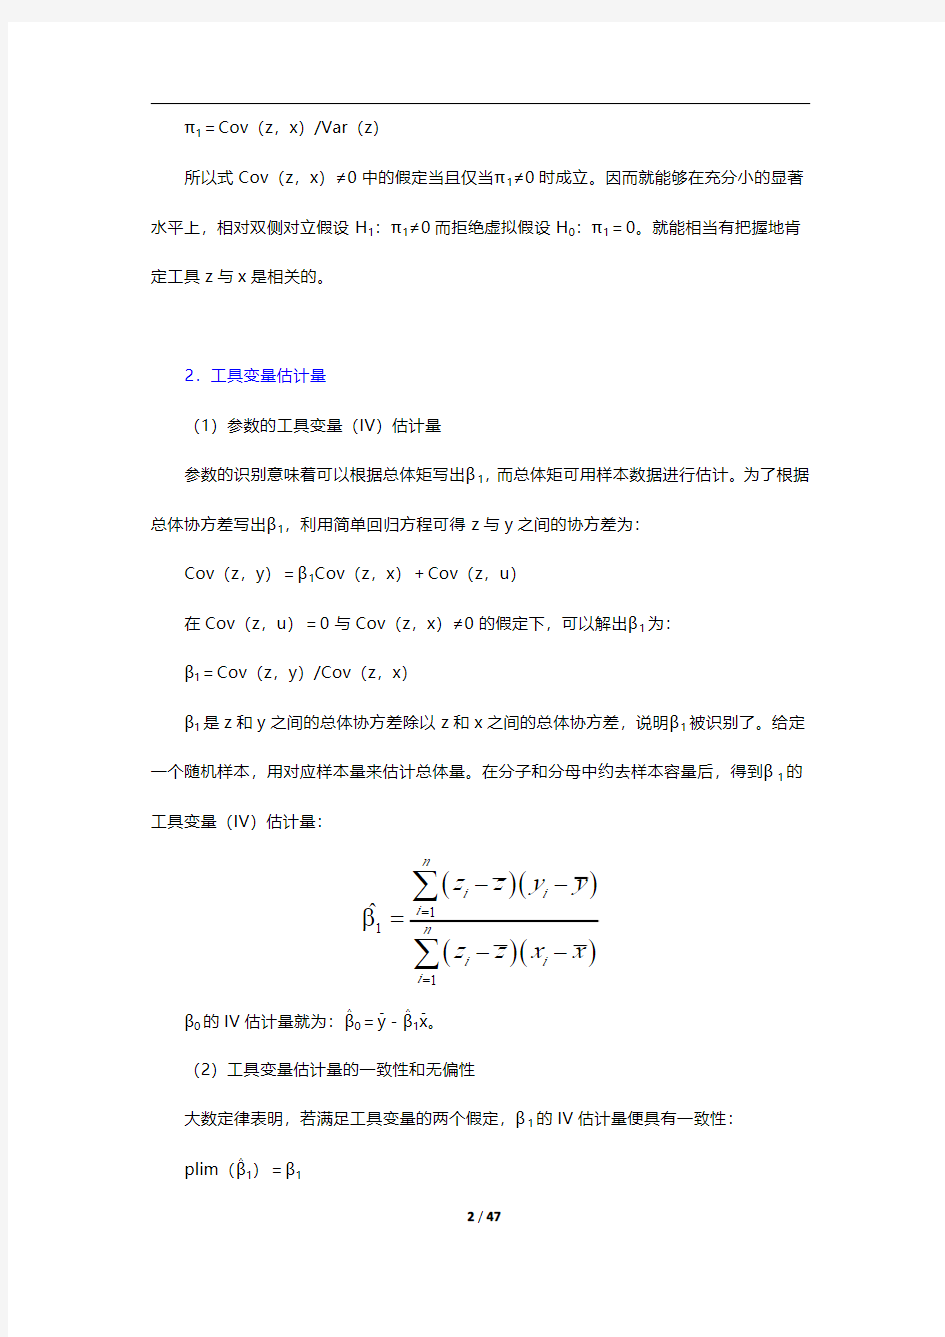 伍德里奇《计量经济学导论》(第6版)复习笔记和课后习题详解-工具变量估计与两阶段最小二乘法